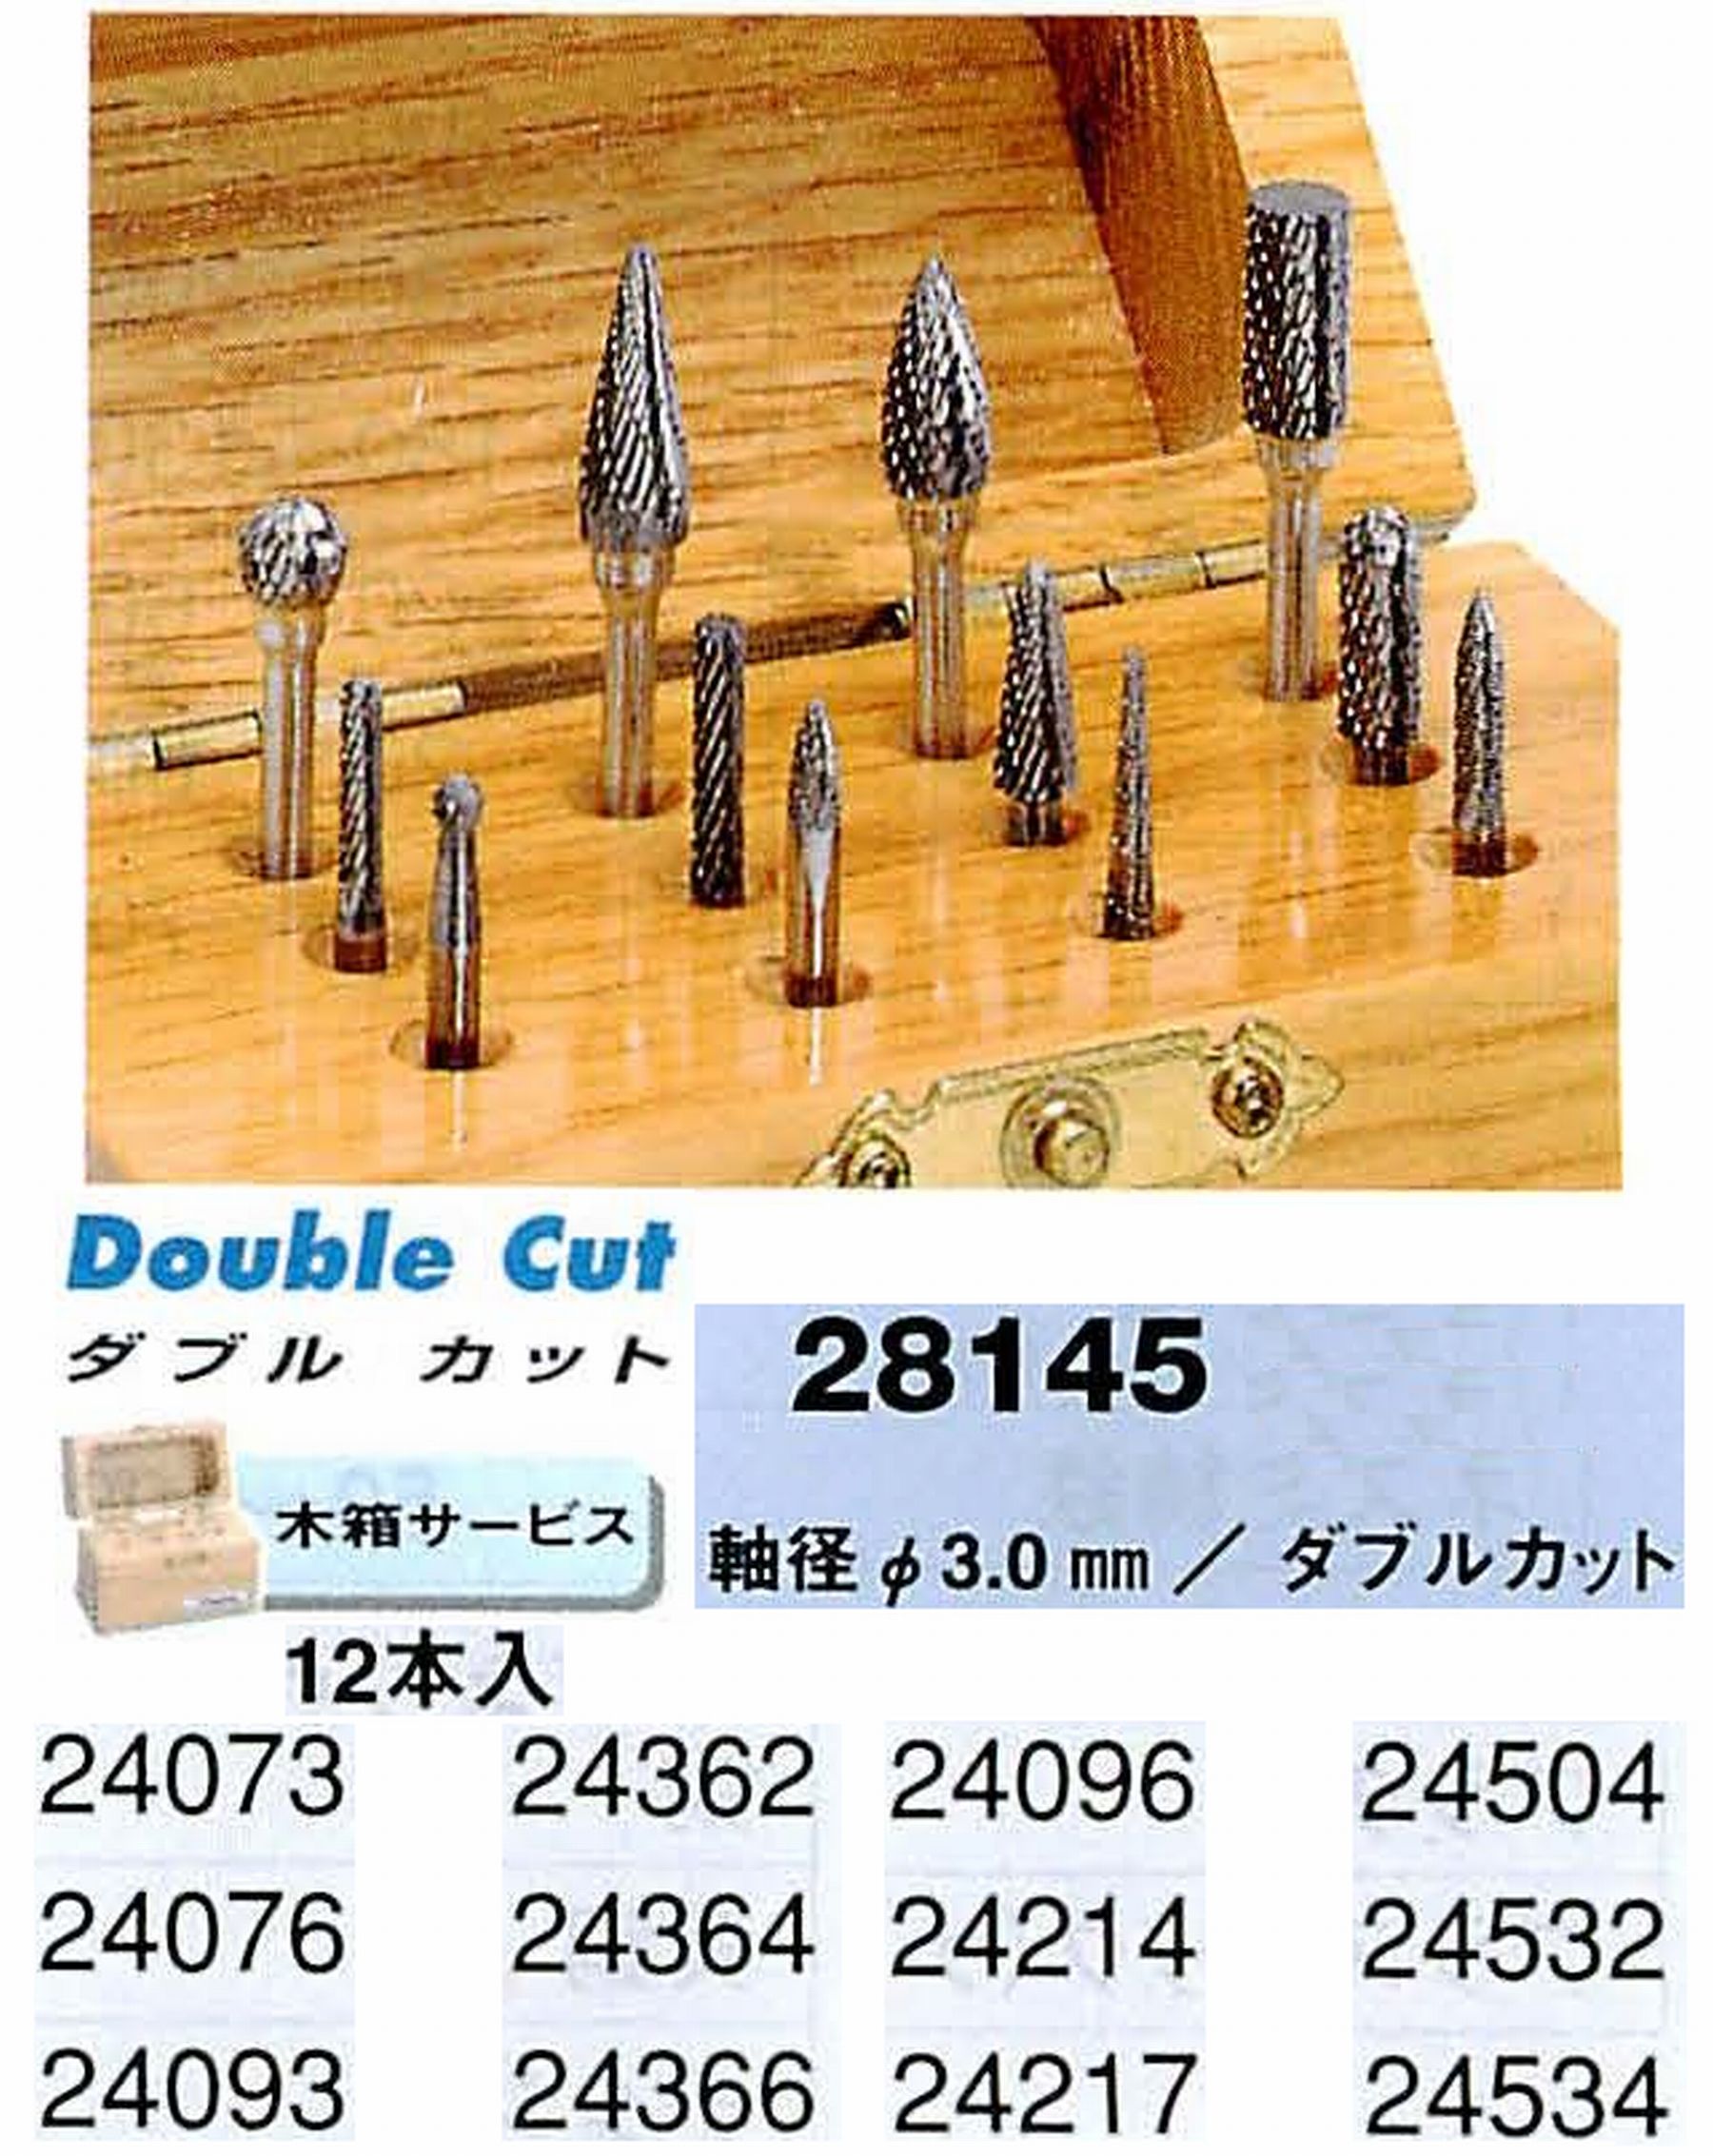 ナカニシ/NAKANISHI 超硬カッター アソートセット 軸径(シャンク)φ3.0mm 28145